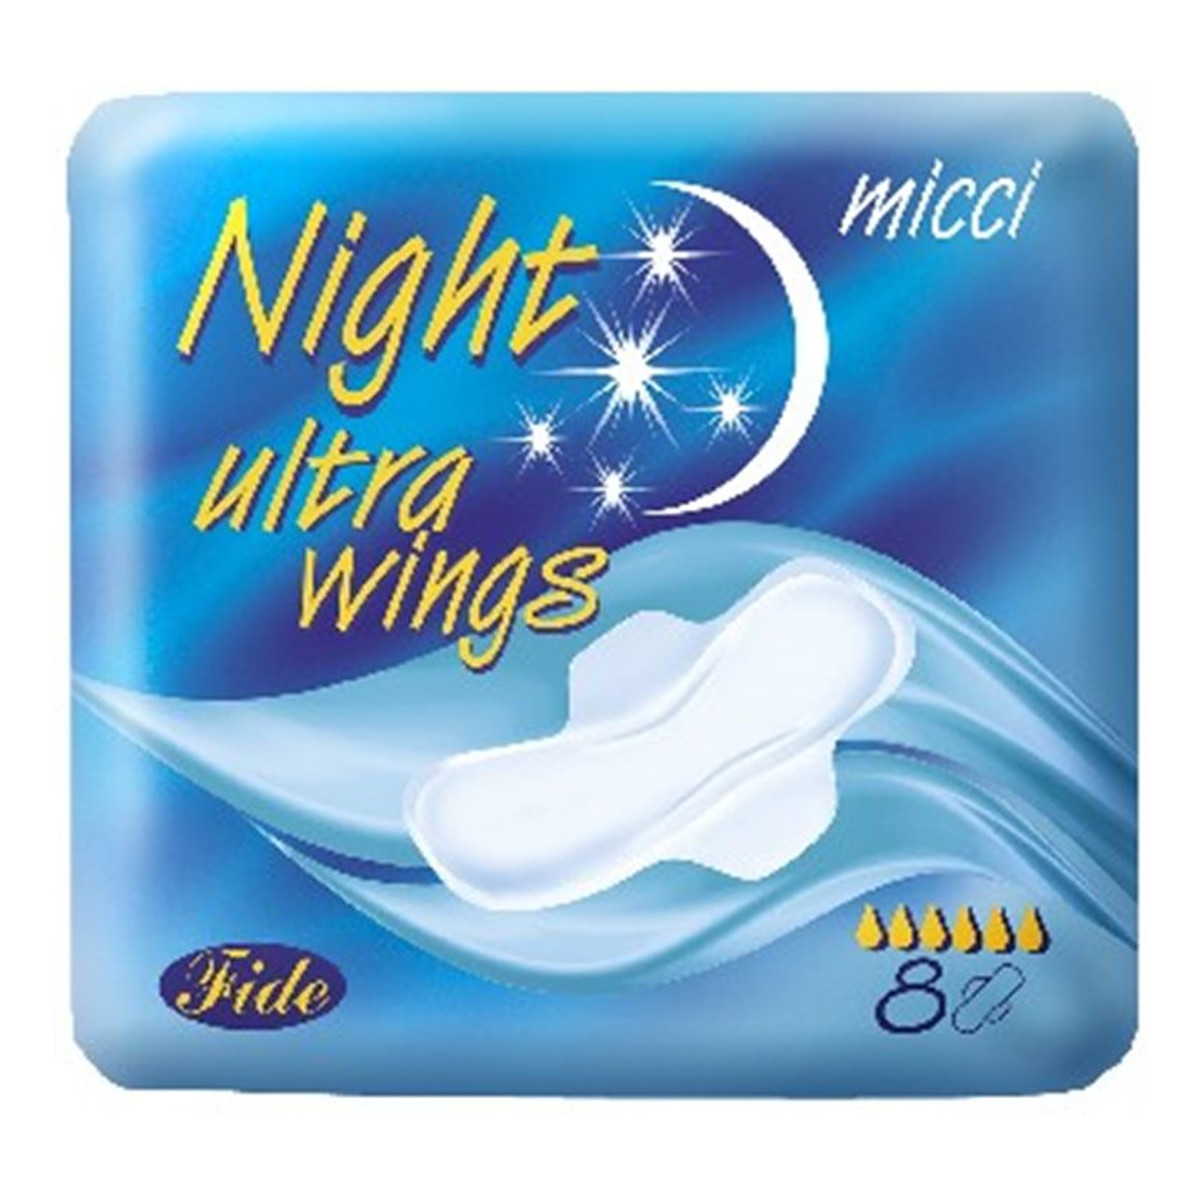 Micci Ultra wings night ultracienkie podpaski na noc 8szt